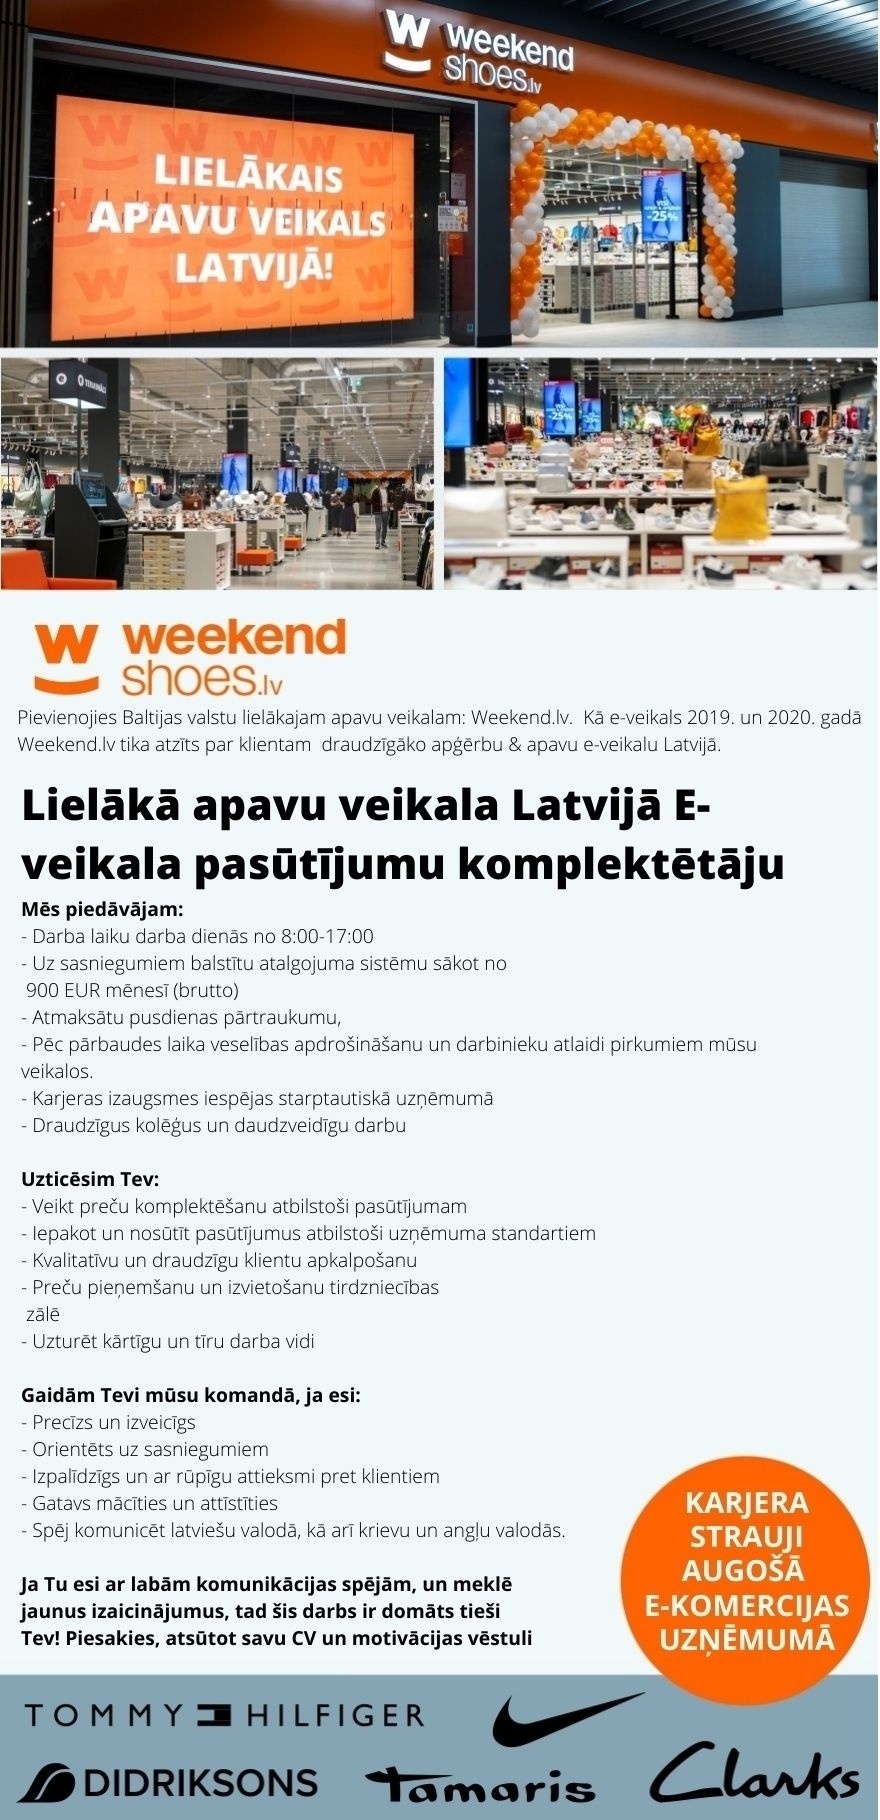 WEEKEND LATVIA, SIA No 8:00-17:00 E-veikala pasūtījumu komplektētājs/-a Lielākajā apavu veikalā Latvijā